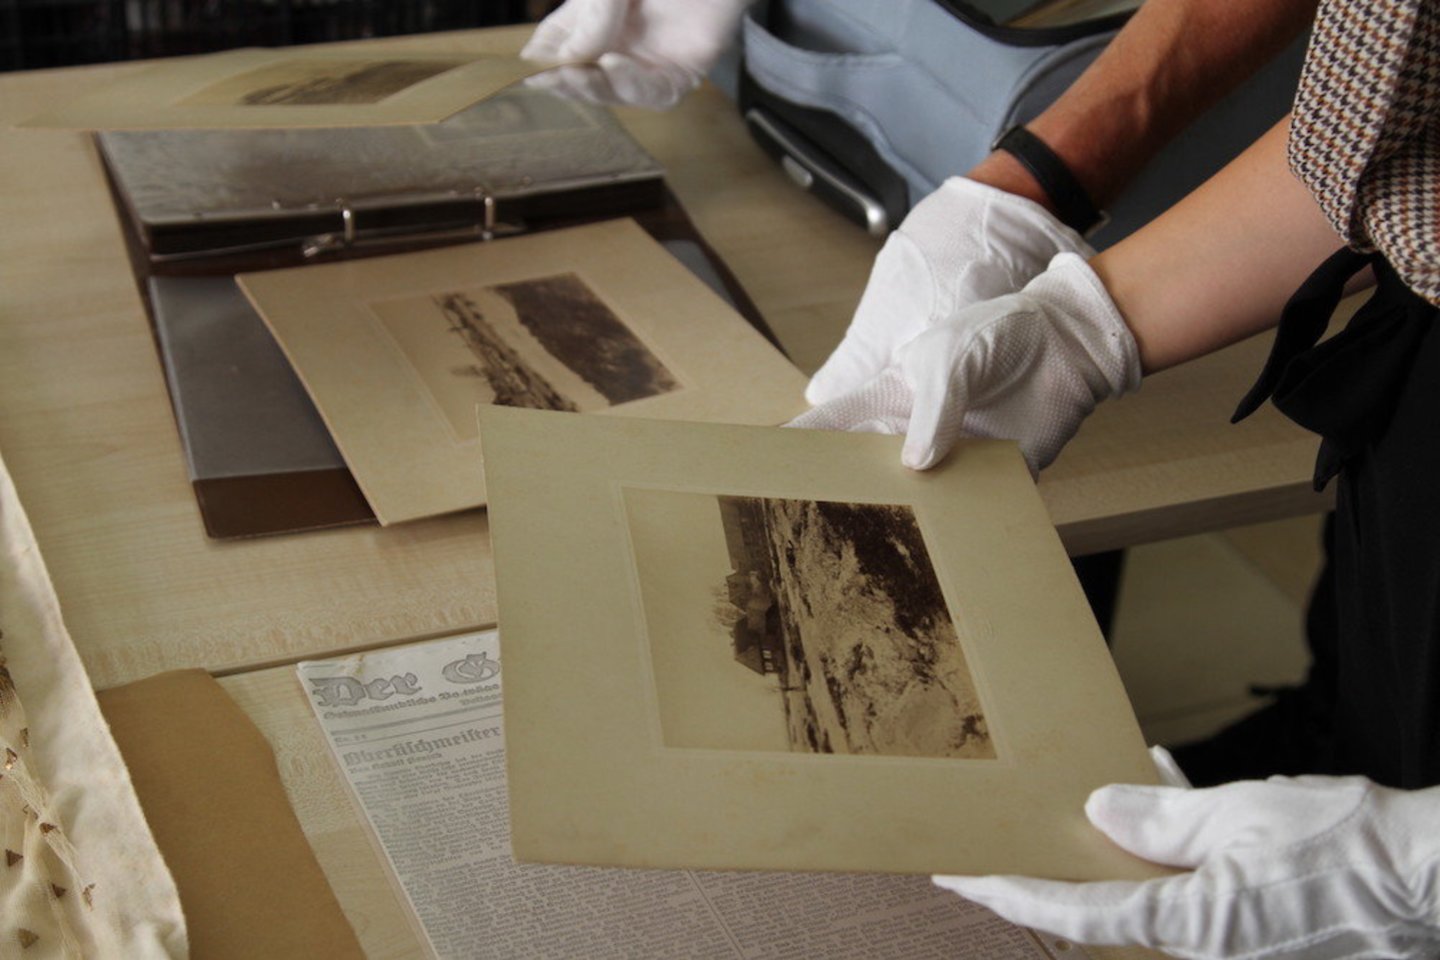 Tilmanas Kroekeris muziejui padovanojo išsaugotus dokumentus, nuotraukas ir karalienės Luizės suknelės skiautes.<br>L.Giedraitytės nuotr. 